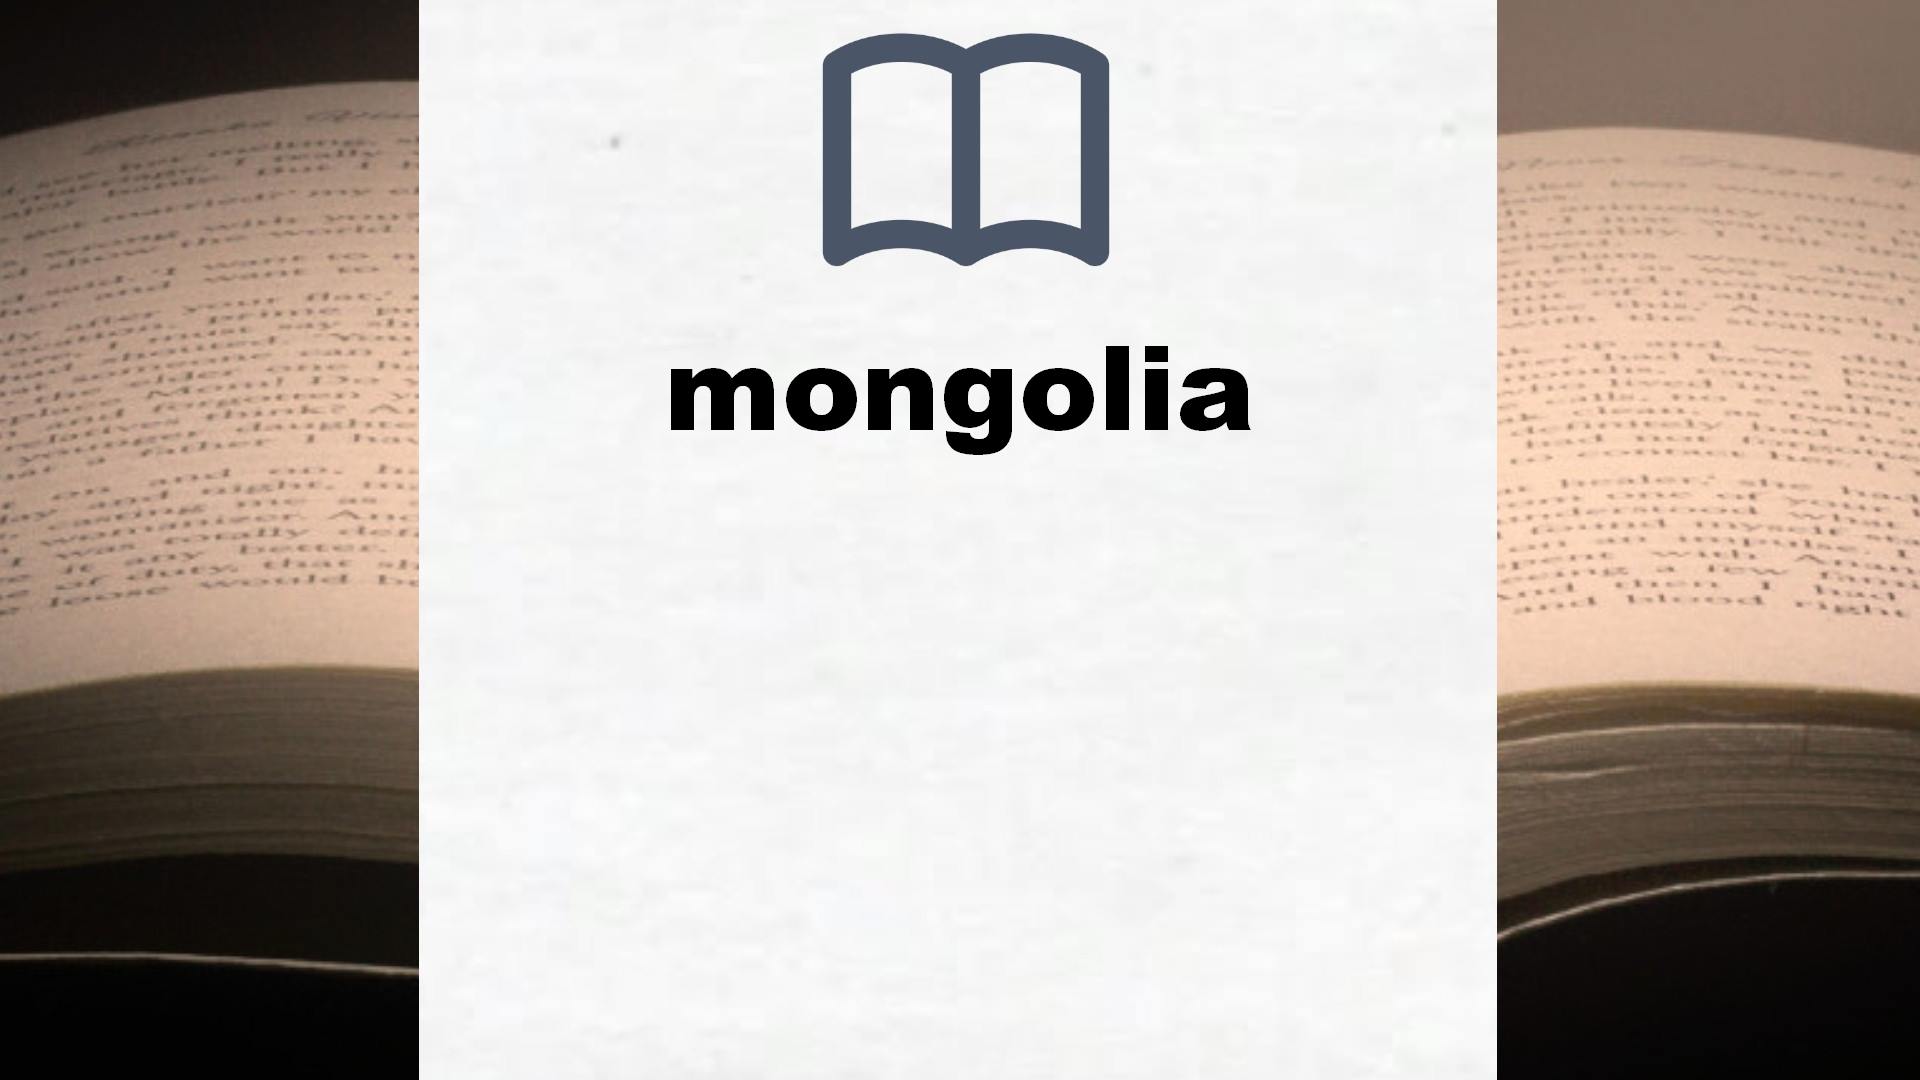 Libros sobre mongolia